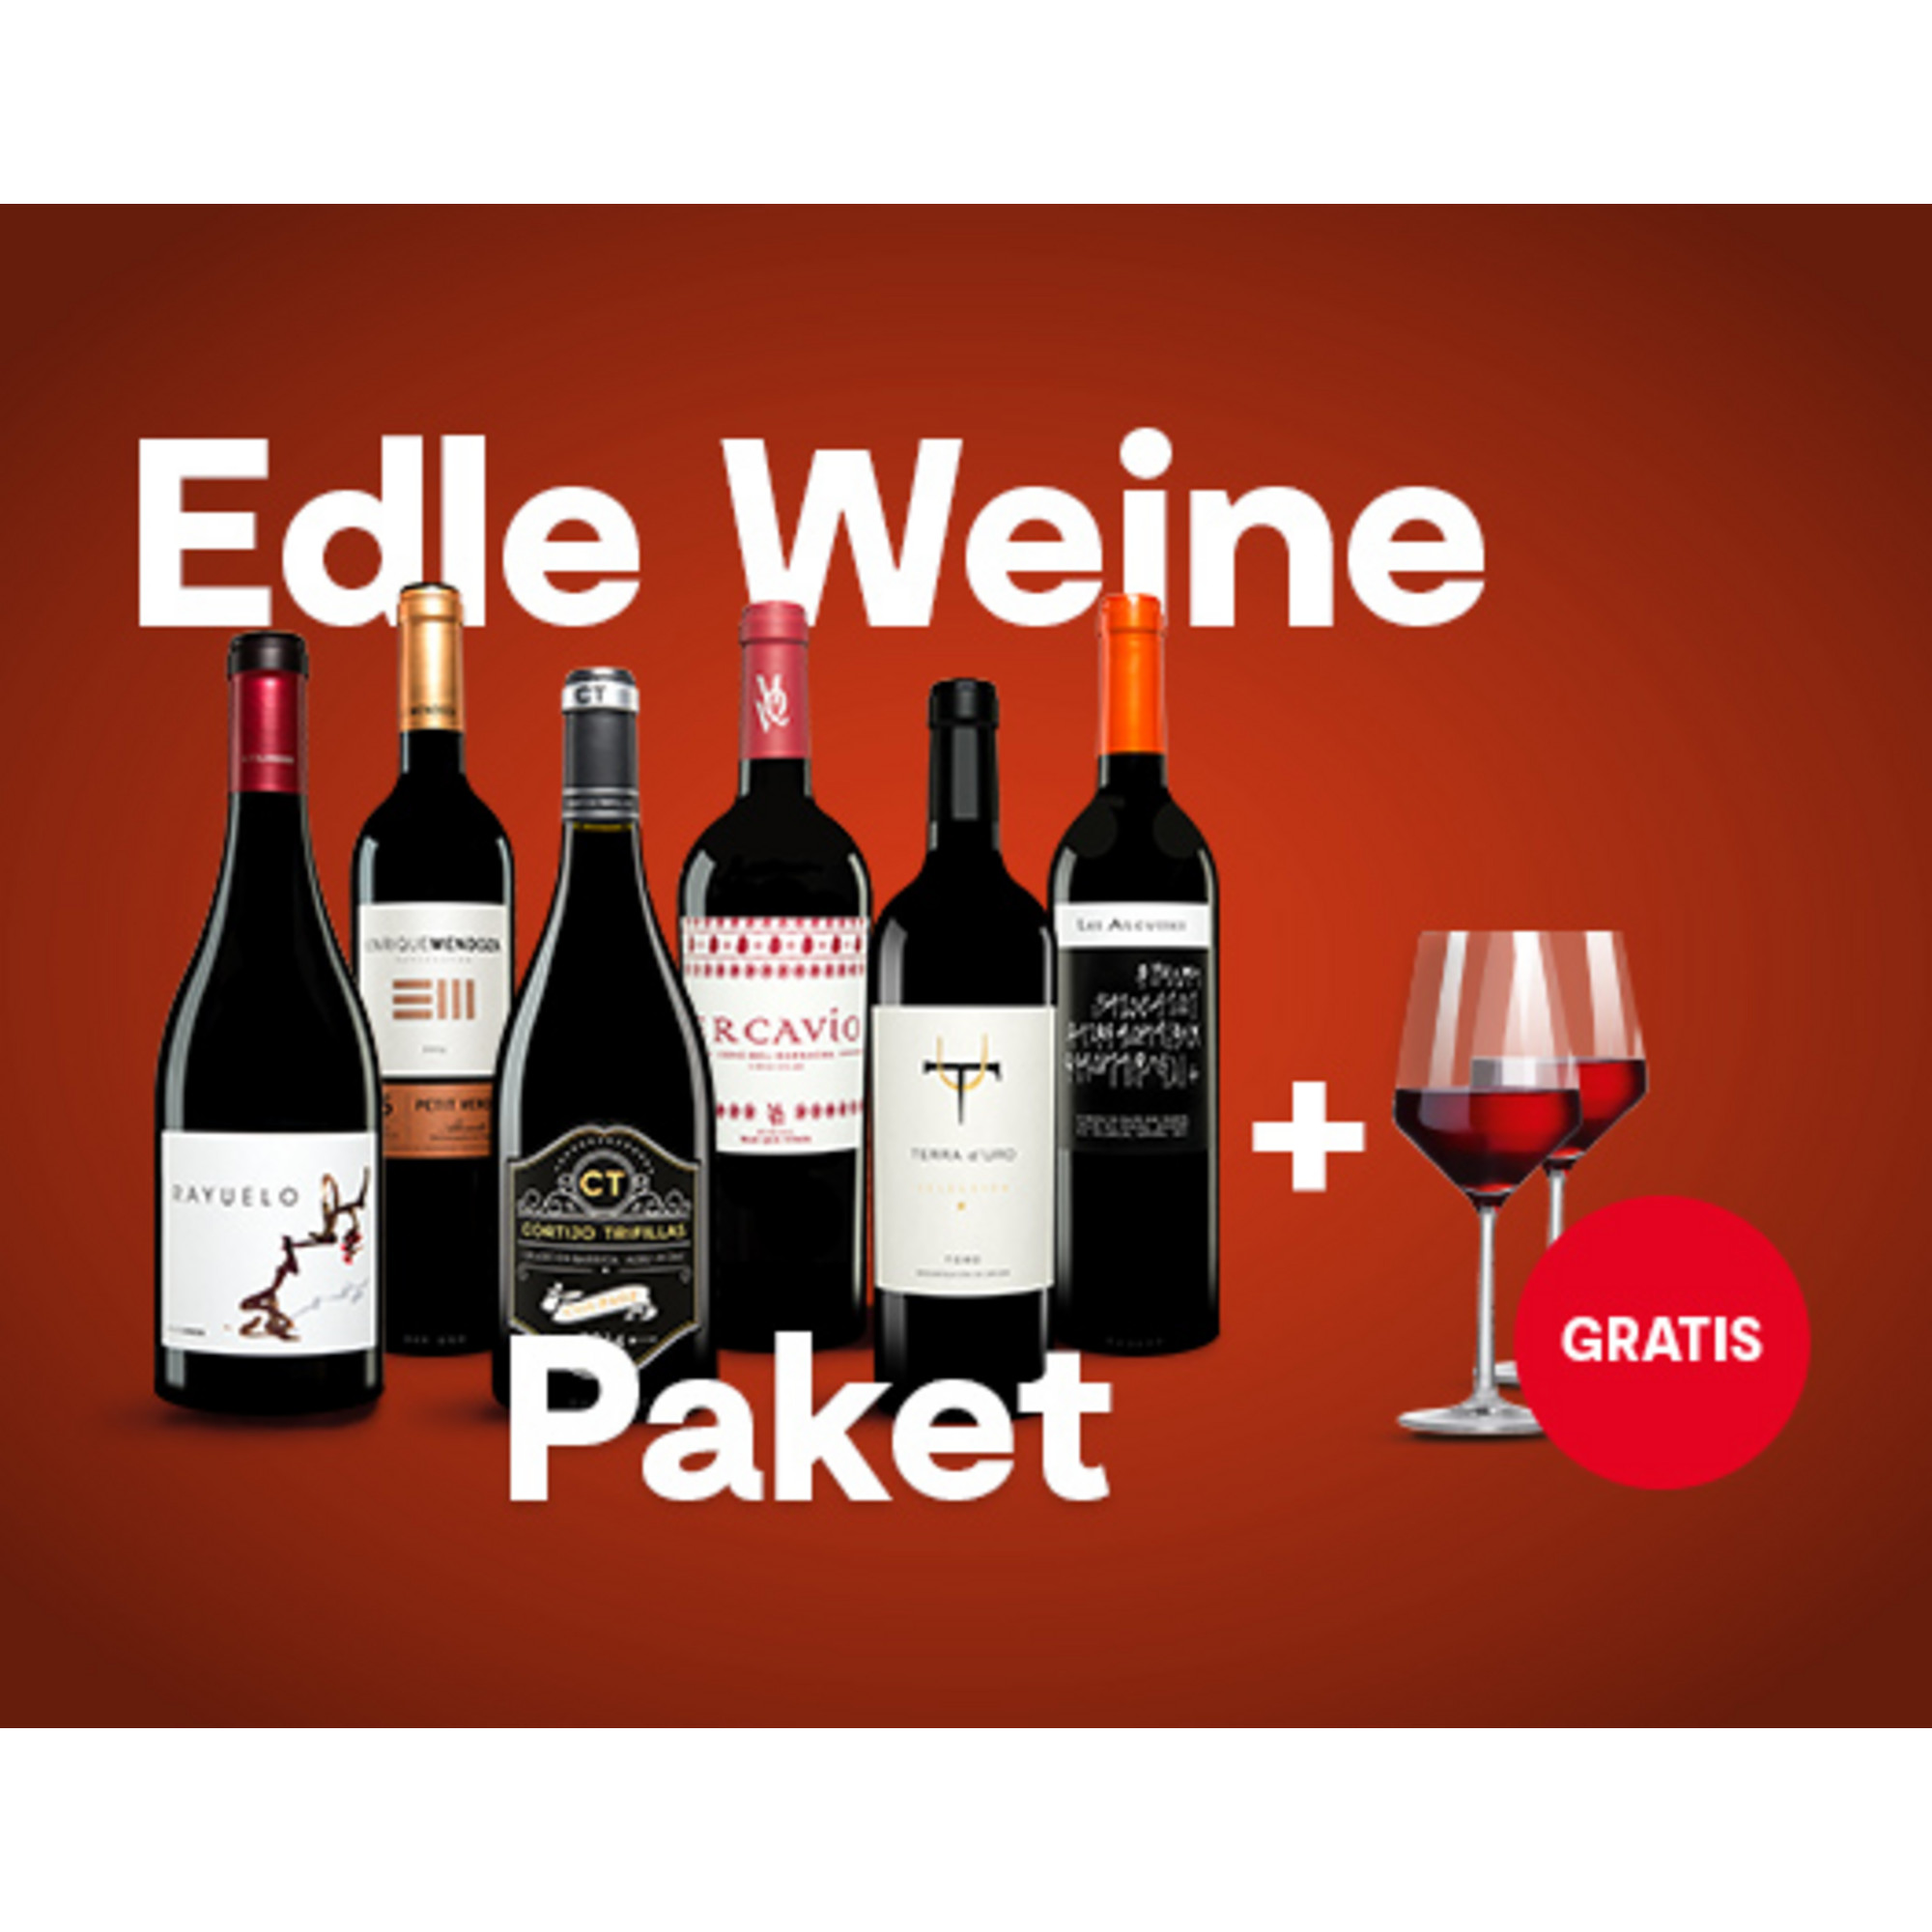 Edle Weine Paket + Gratis-Gläser-Set  4.5L Weinpaket aus Spanien 26816 vinos DE